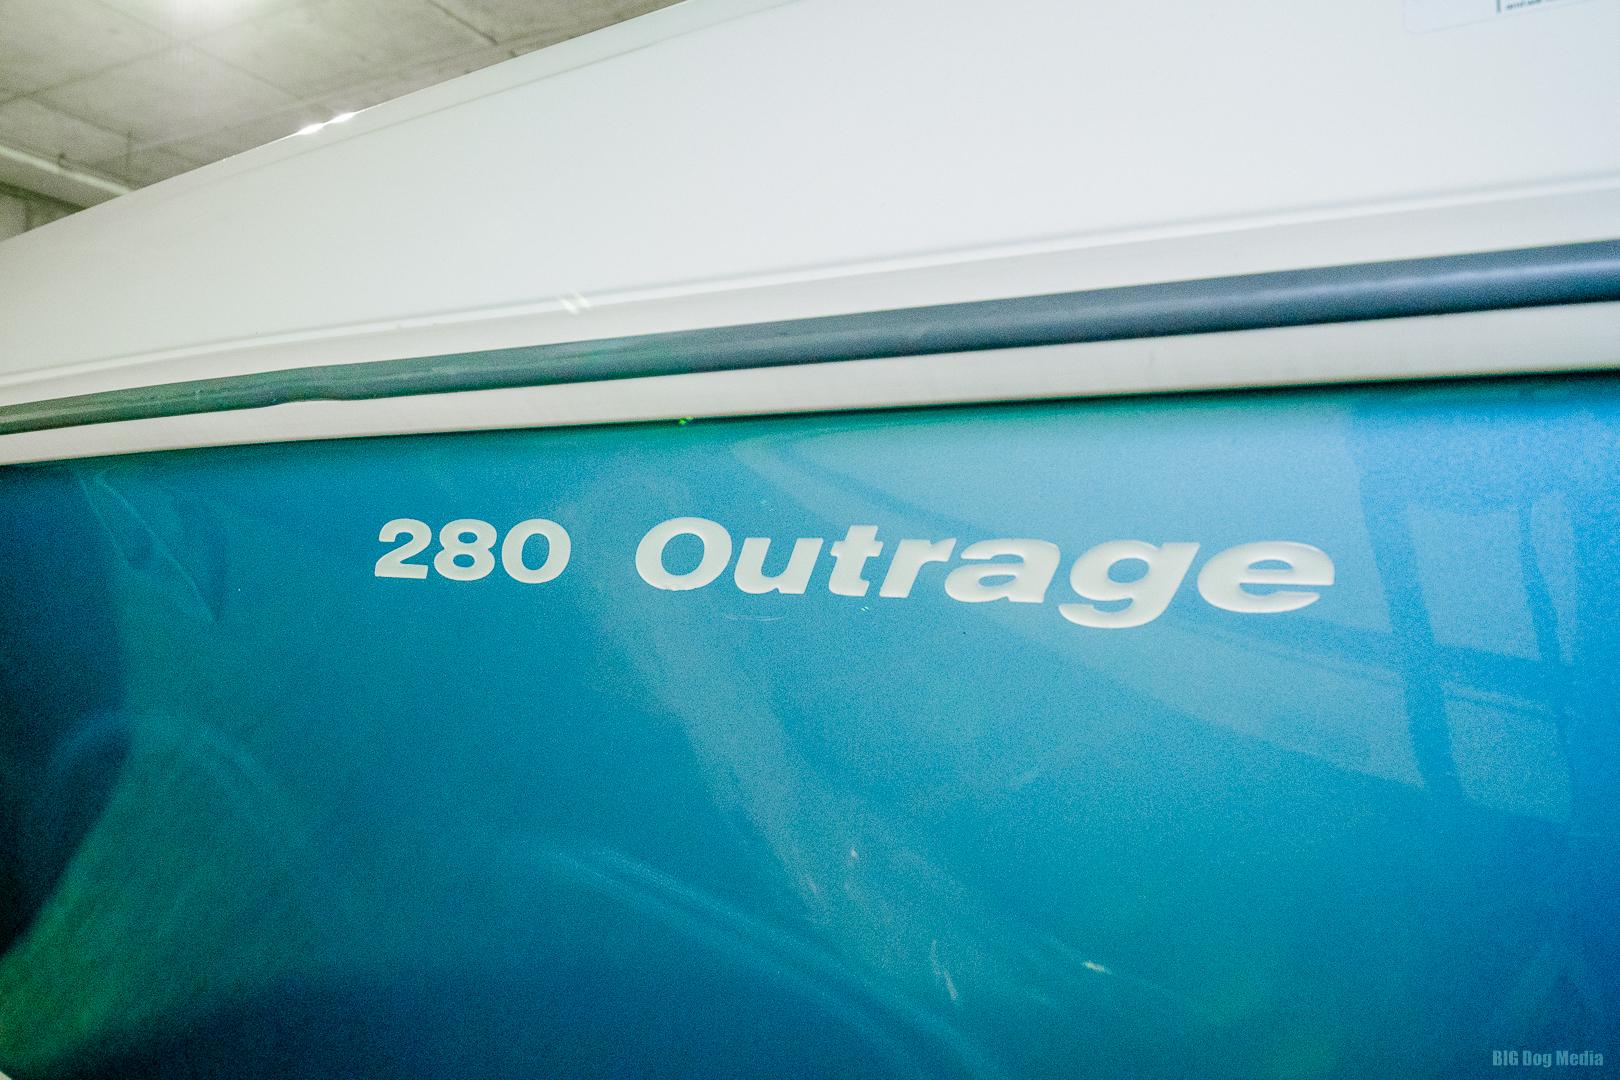 2015 Boston Whaler 280 Outrage